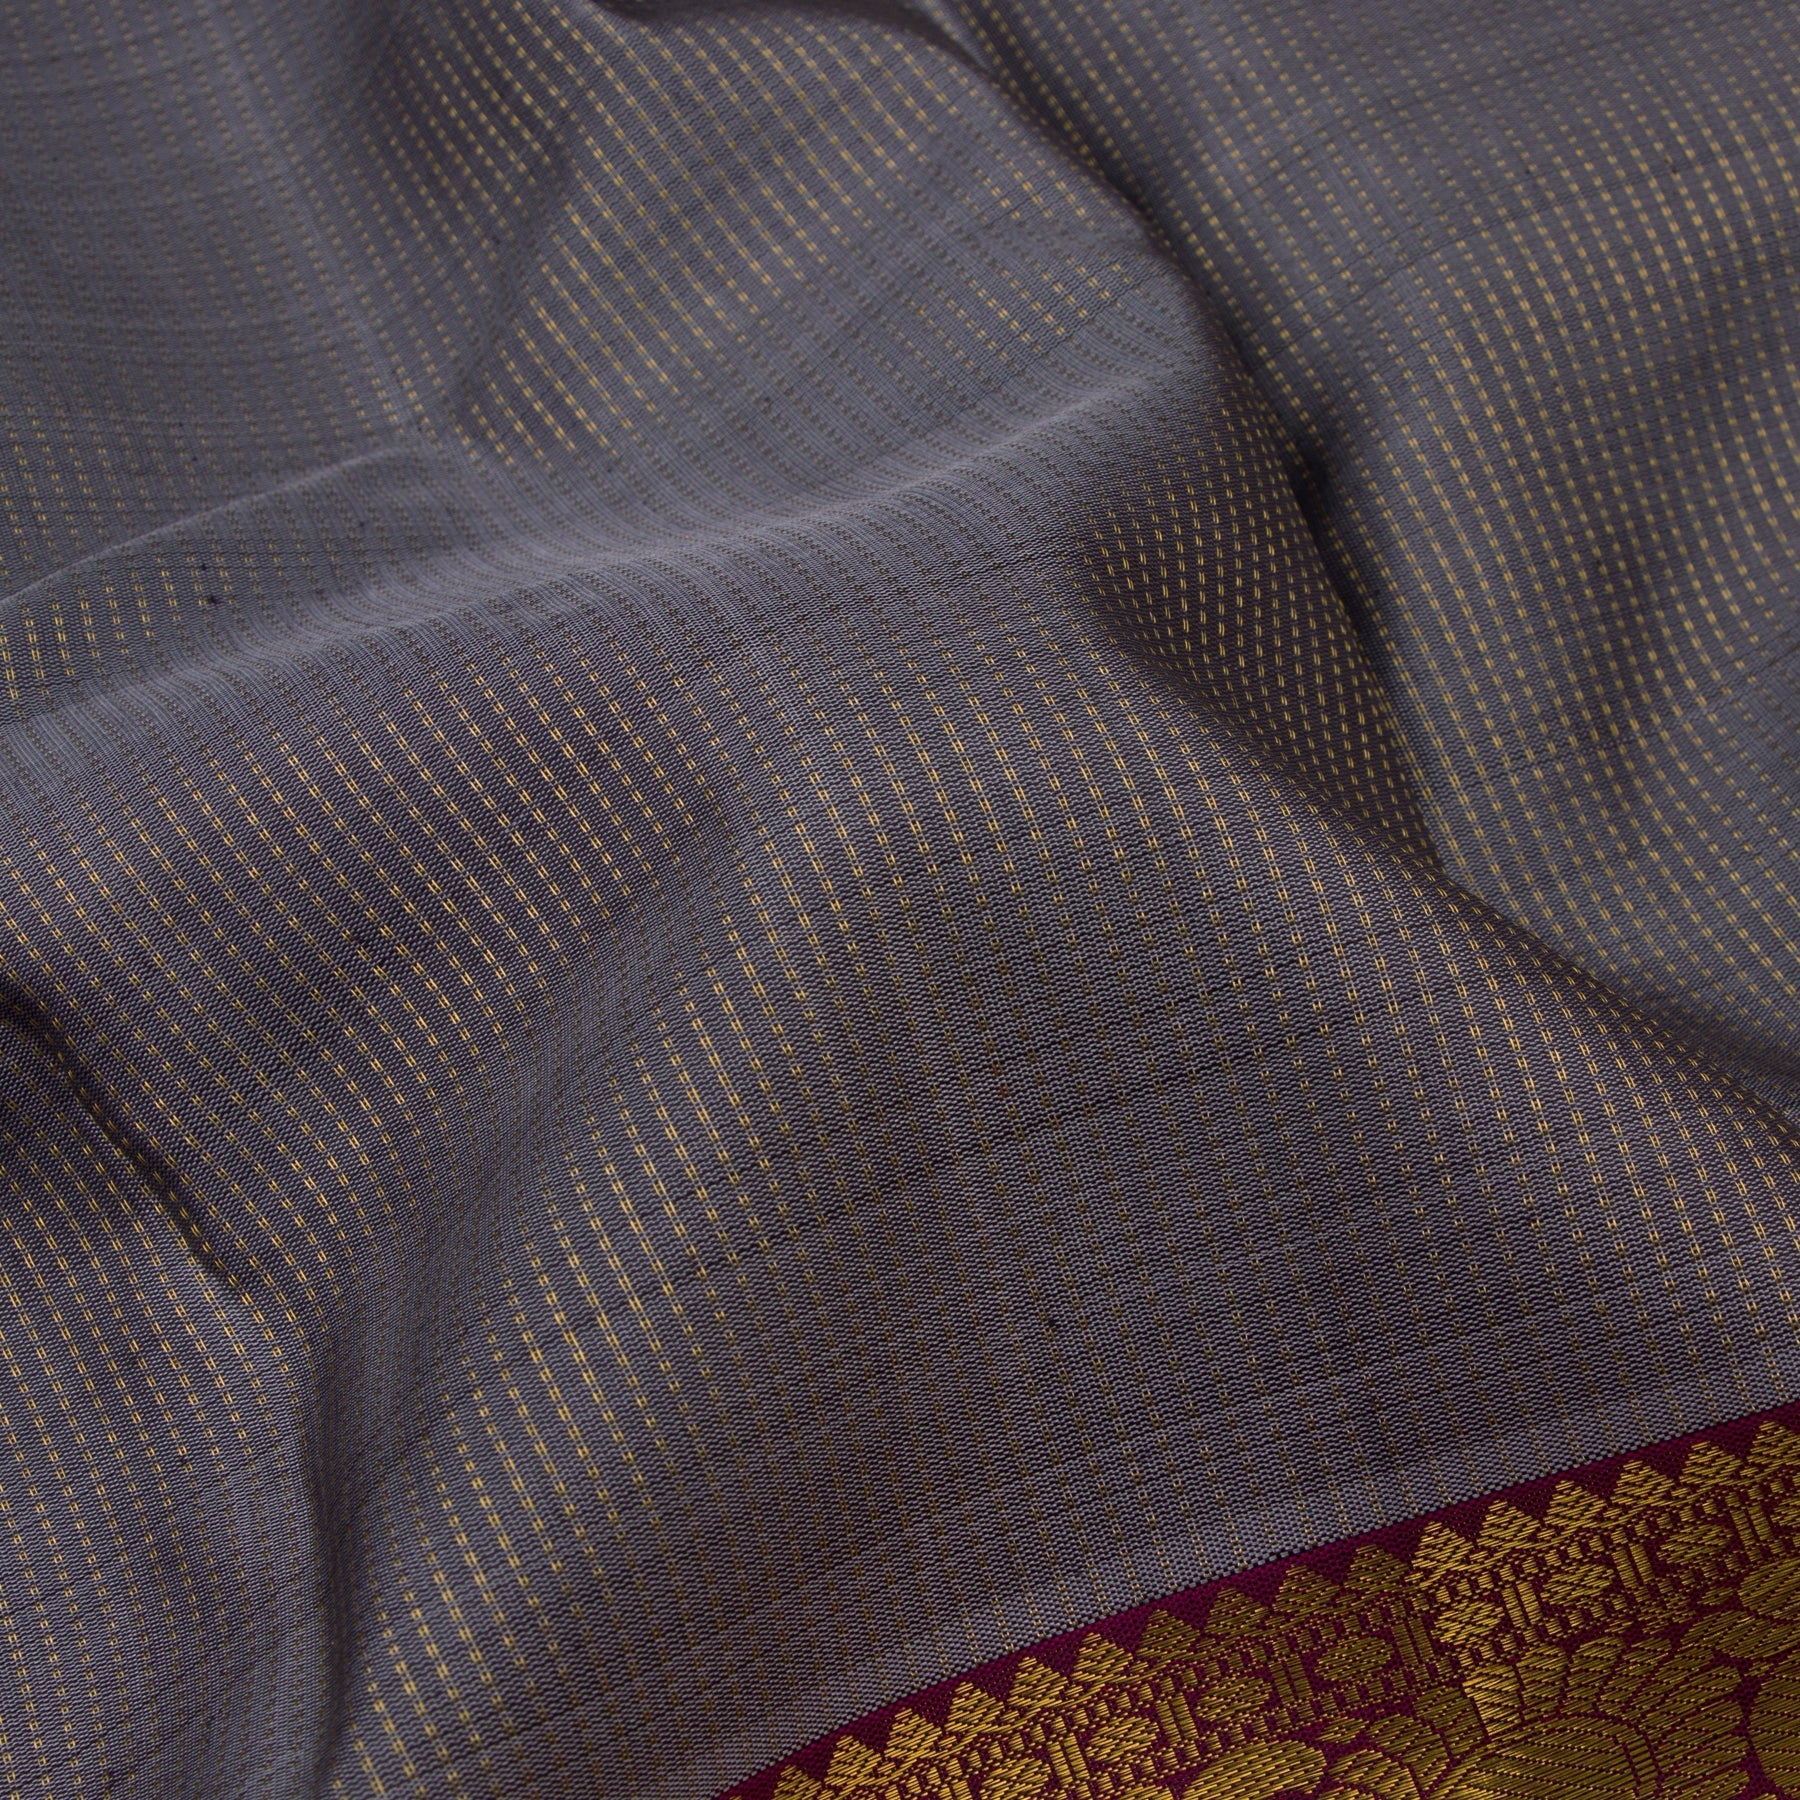 Kanakavalli Kanjivaram Silk Sari 22-599-HS001-10320 - Fabric View